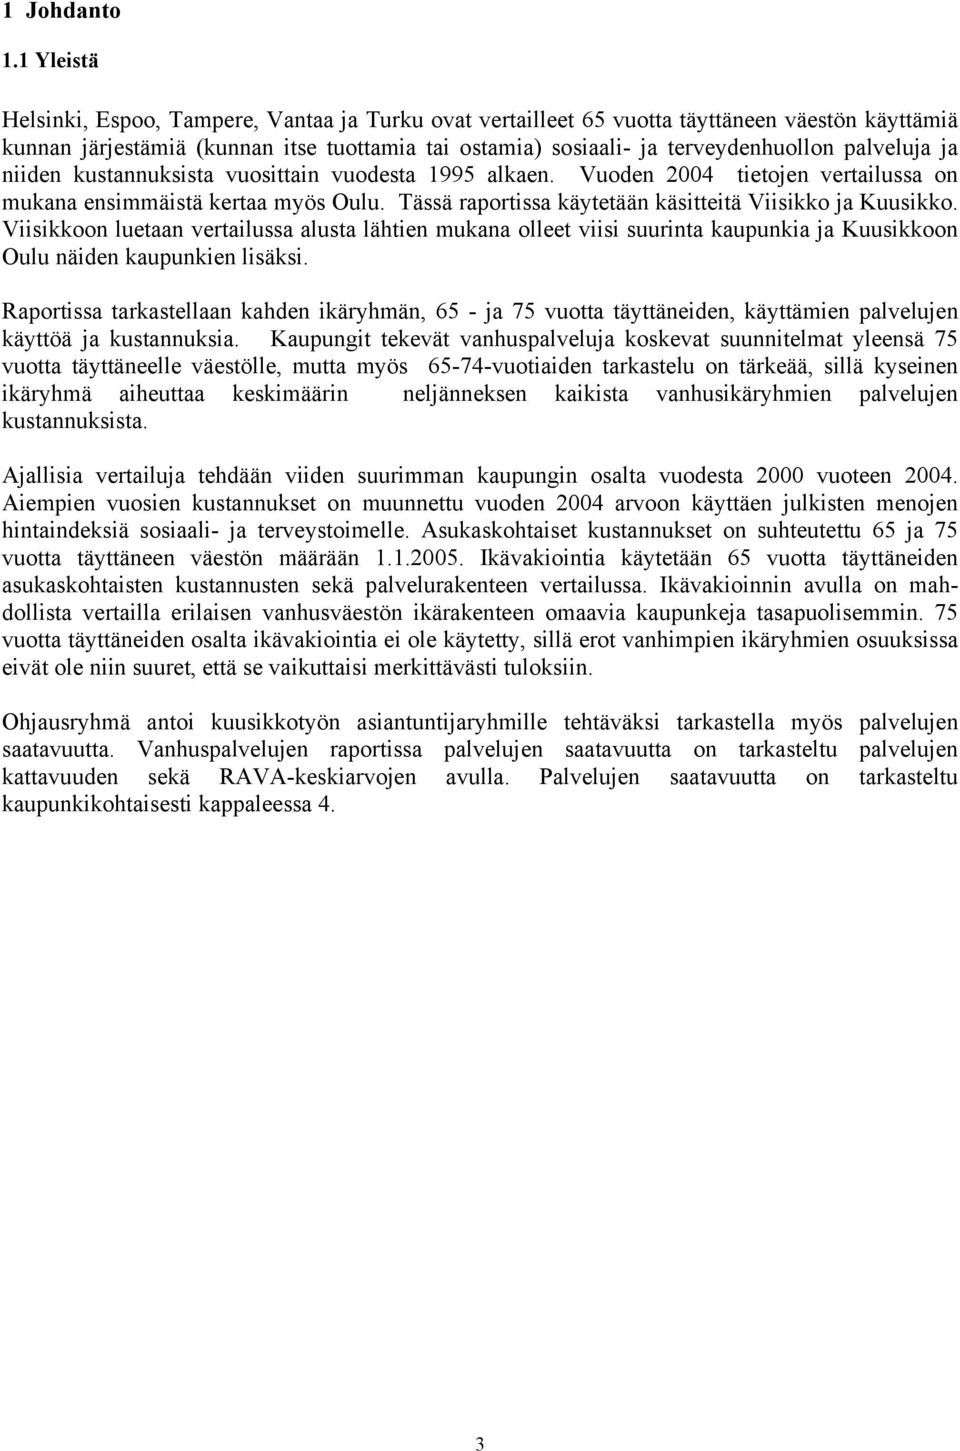 palveluja ja niiden kustannuksista vuosittain vuodesta 1995 alkaen. Vuoden 2004 tietojen vertailussa on mukana ensimmäistä kertaa myös Oulu. Tässä raportissa käytetään käsitteitä Viisikko ja Kuusikko.